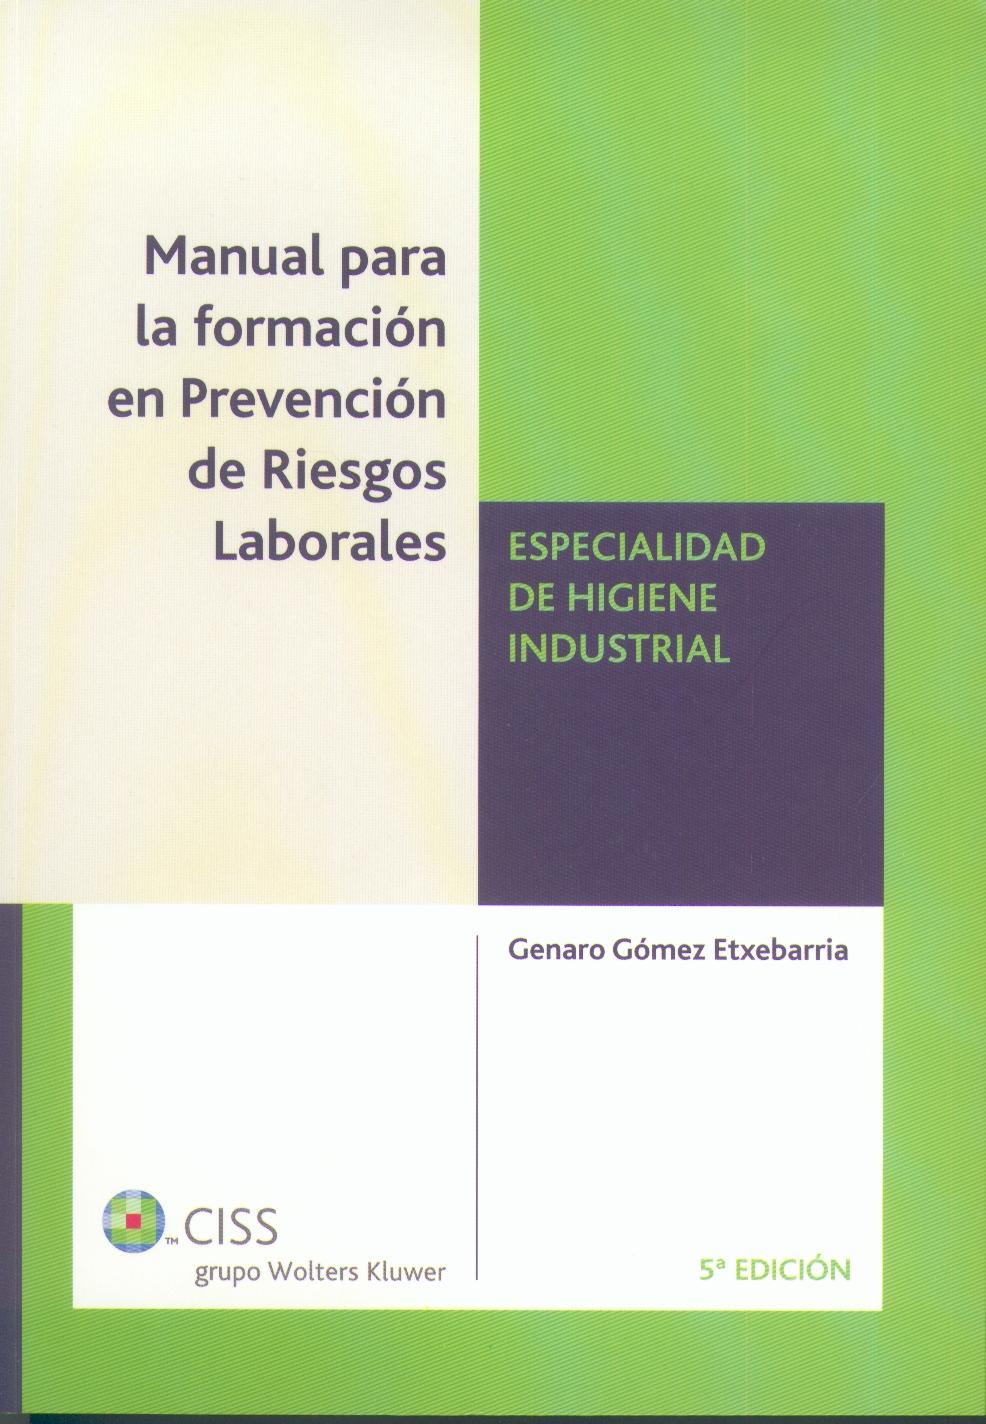 Manual para la Formacion en Prevencion de Riesgos Laborales. Higiene Industrial.